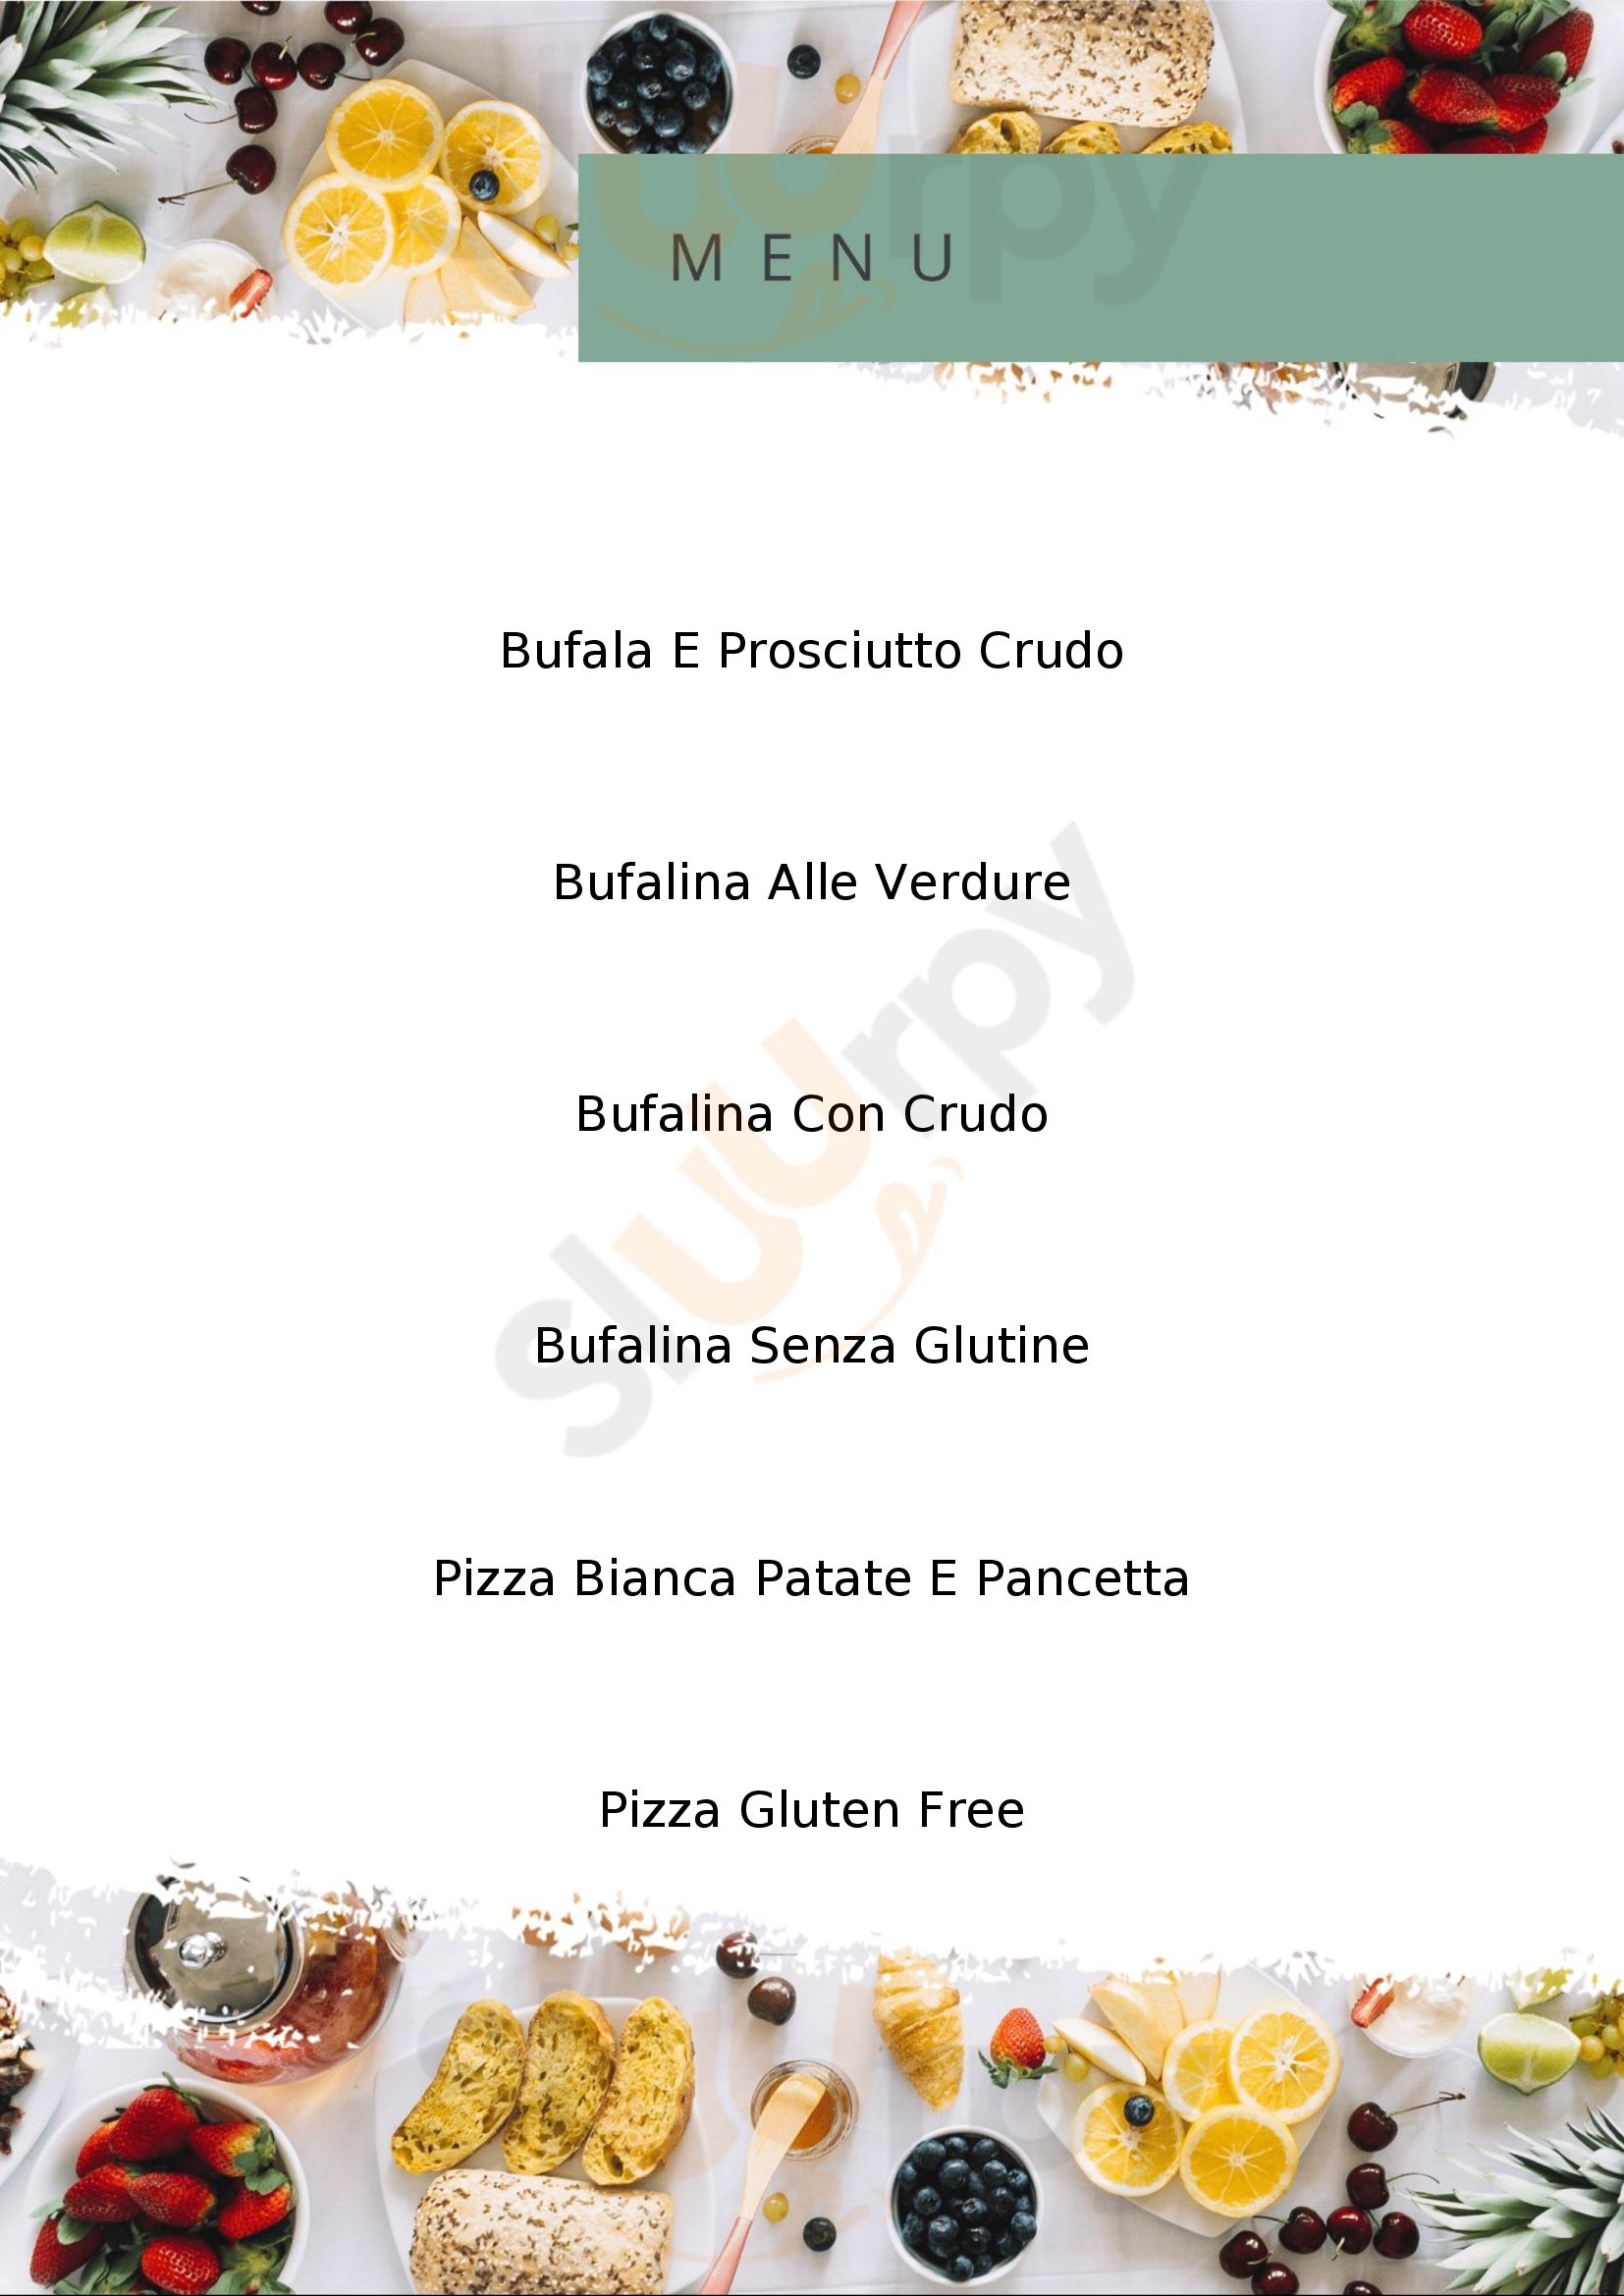 Pizzeria Focacceria Quattrocento Verona menù 1 pagina